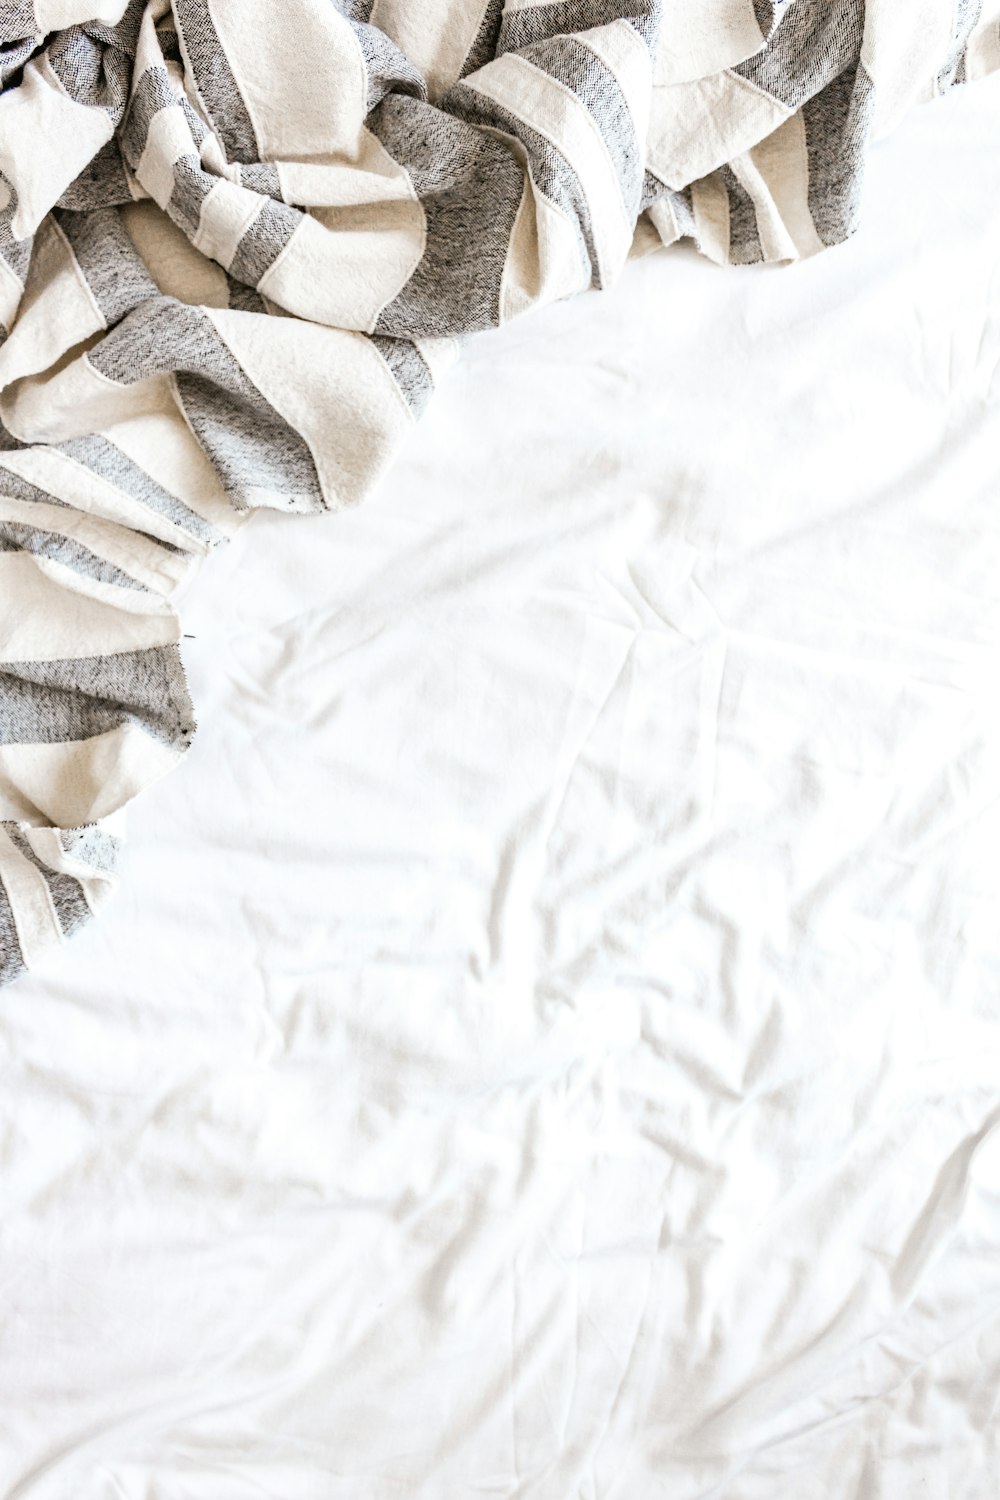 white and brown textile on white textile